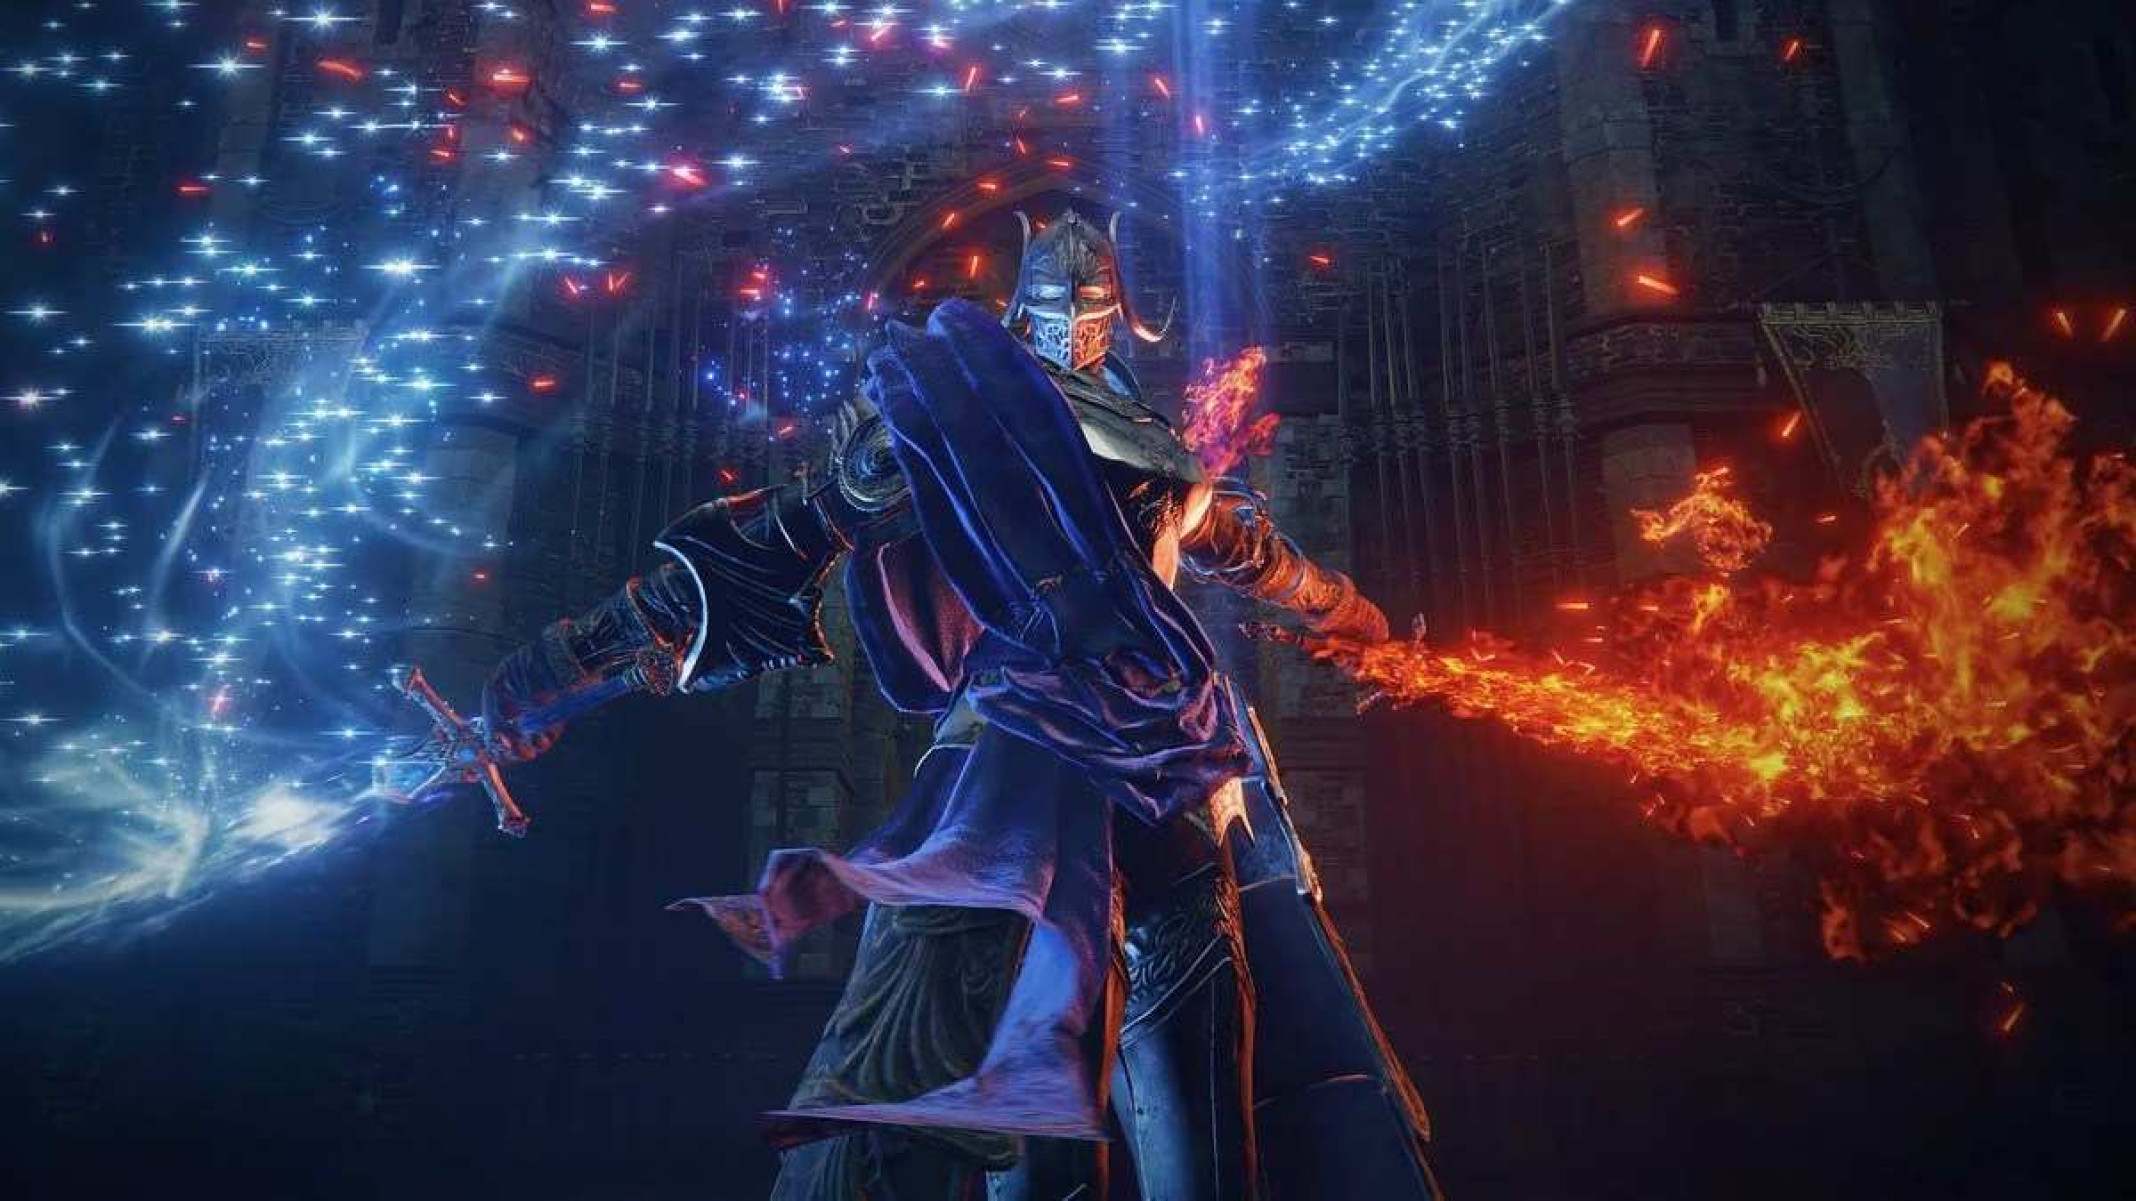 Rellana traz uma das batalhas mais polidas de Dark Souls 3 para Elden Ring.